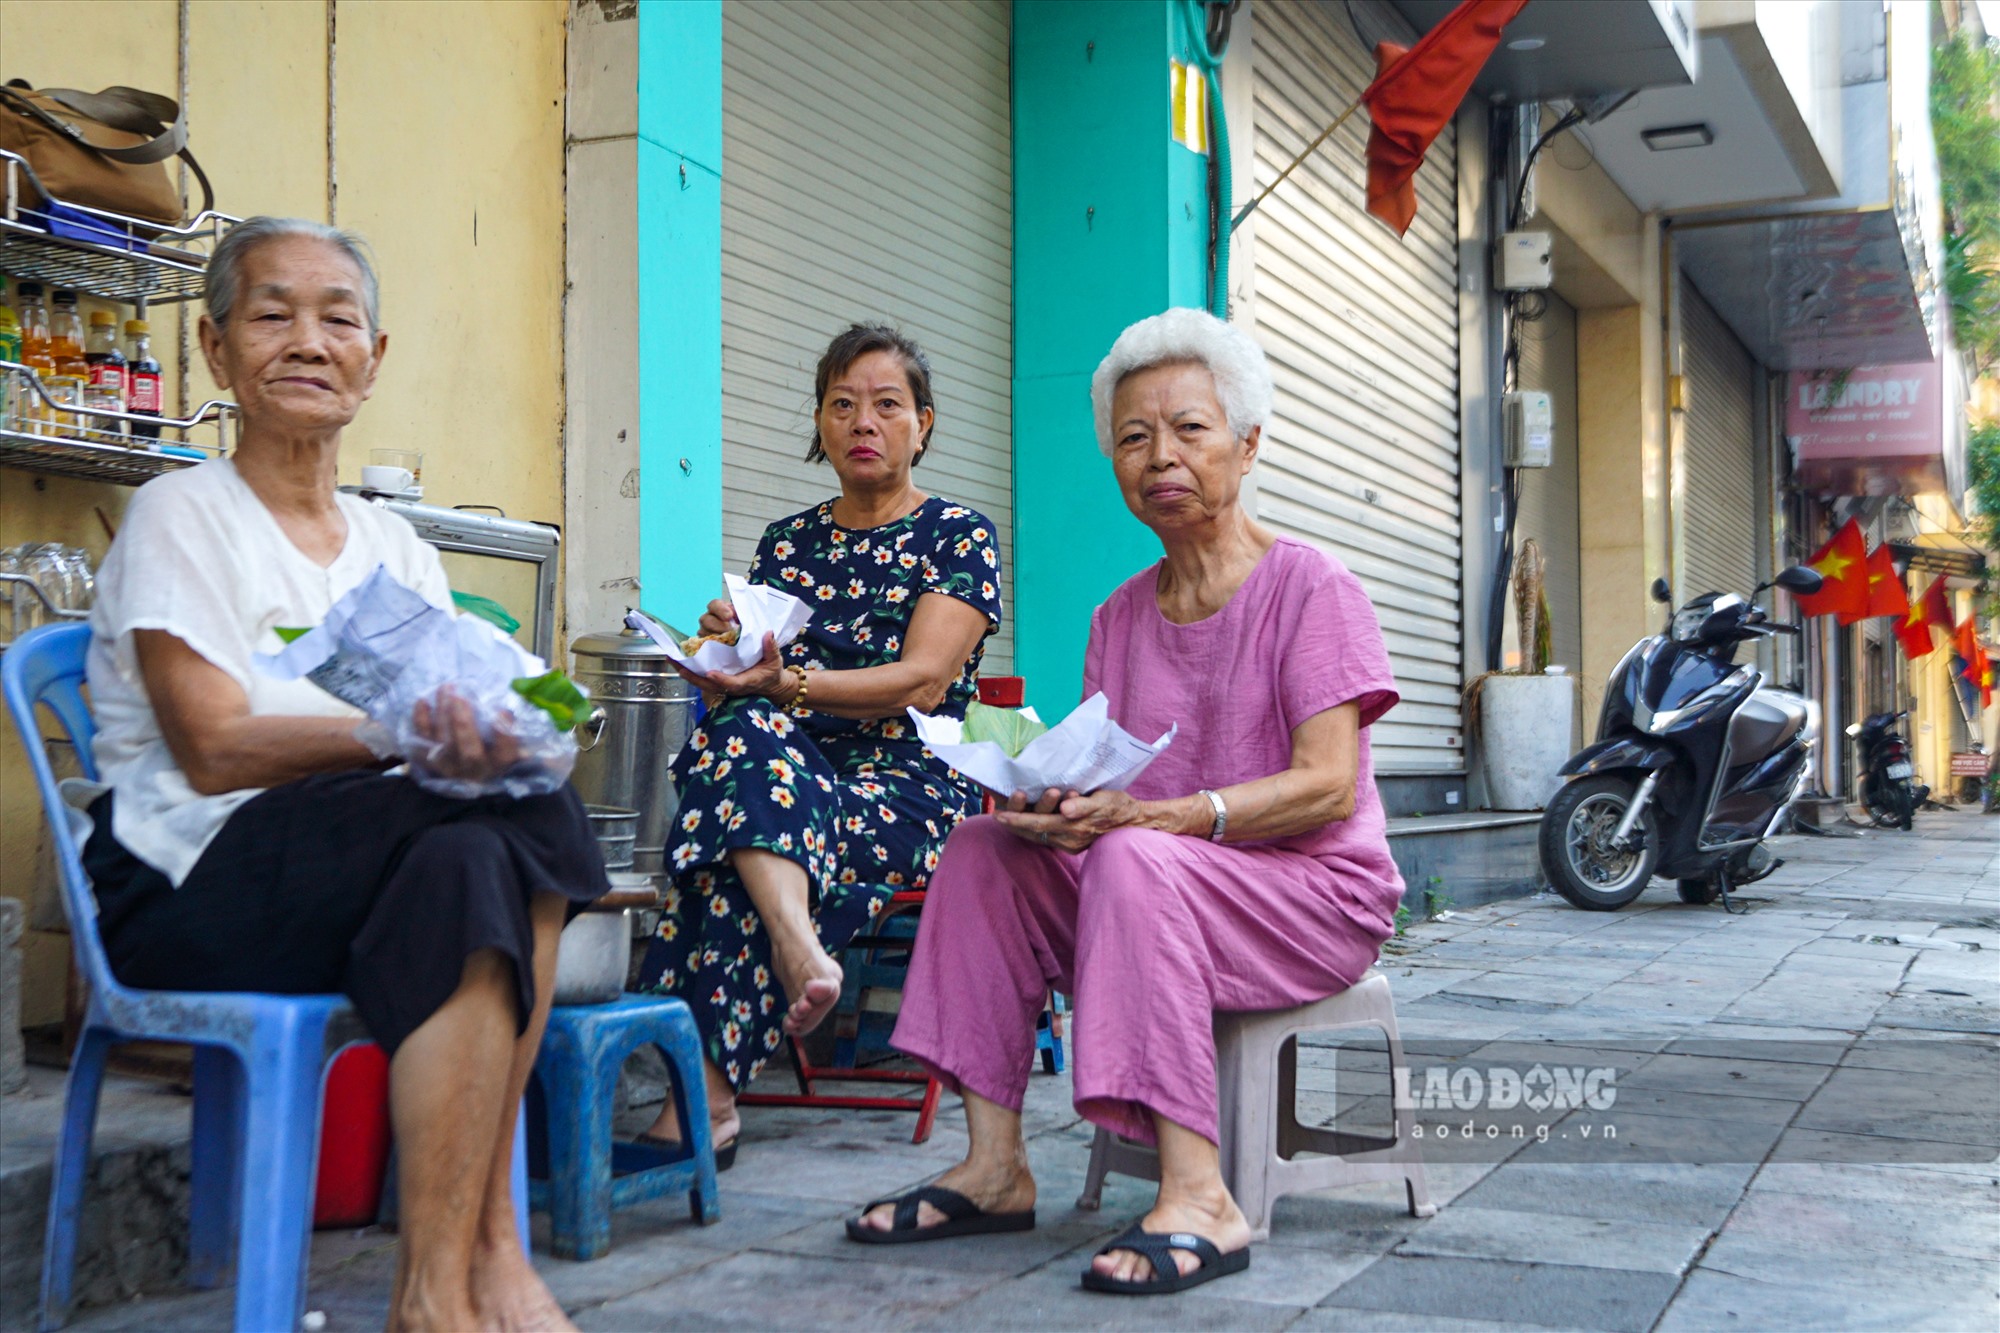 Khu vực phố cổ Hà Nội không còn cảnh đông đúc, nhộn nhịp như mọi khi. Người cao tuổi thư thái ngồi trên vỉa hè ăn sáng.